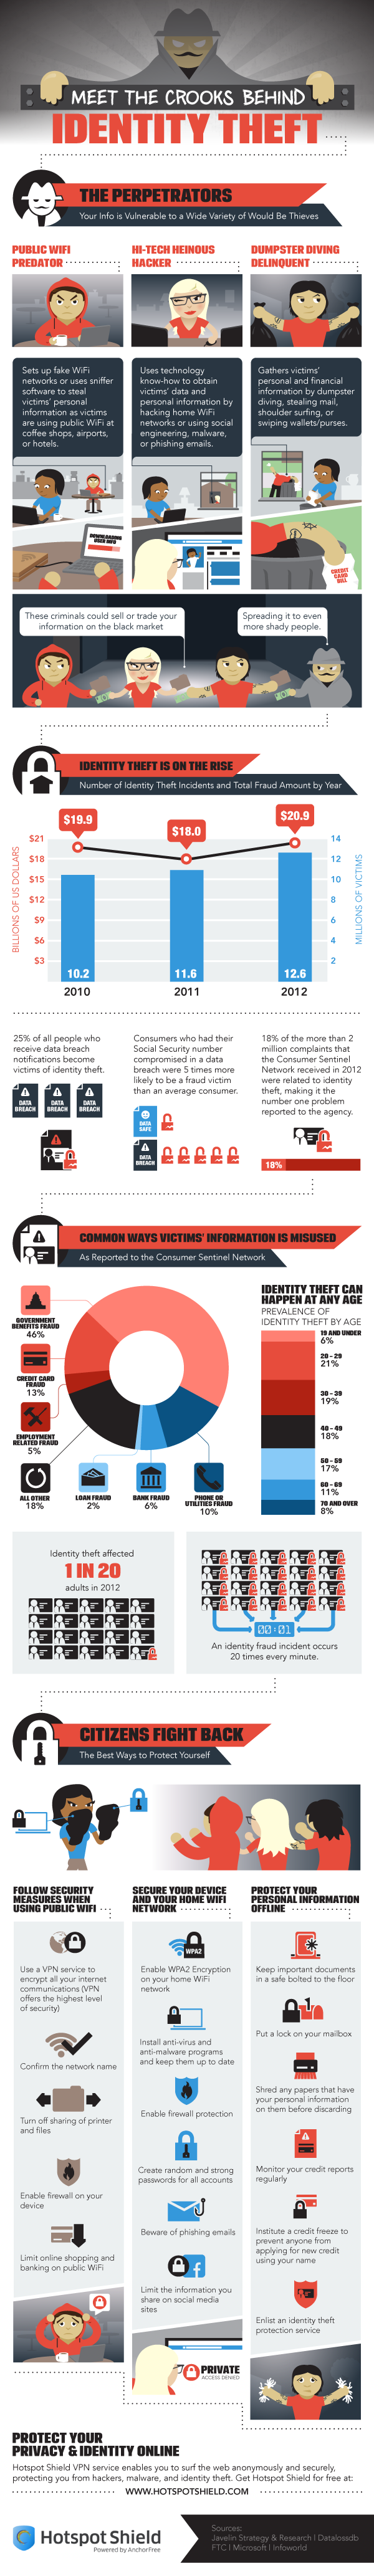 Identity Theft infographic